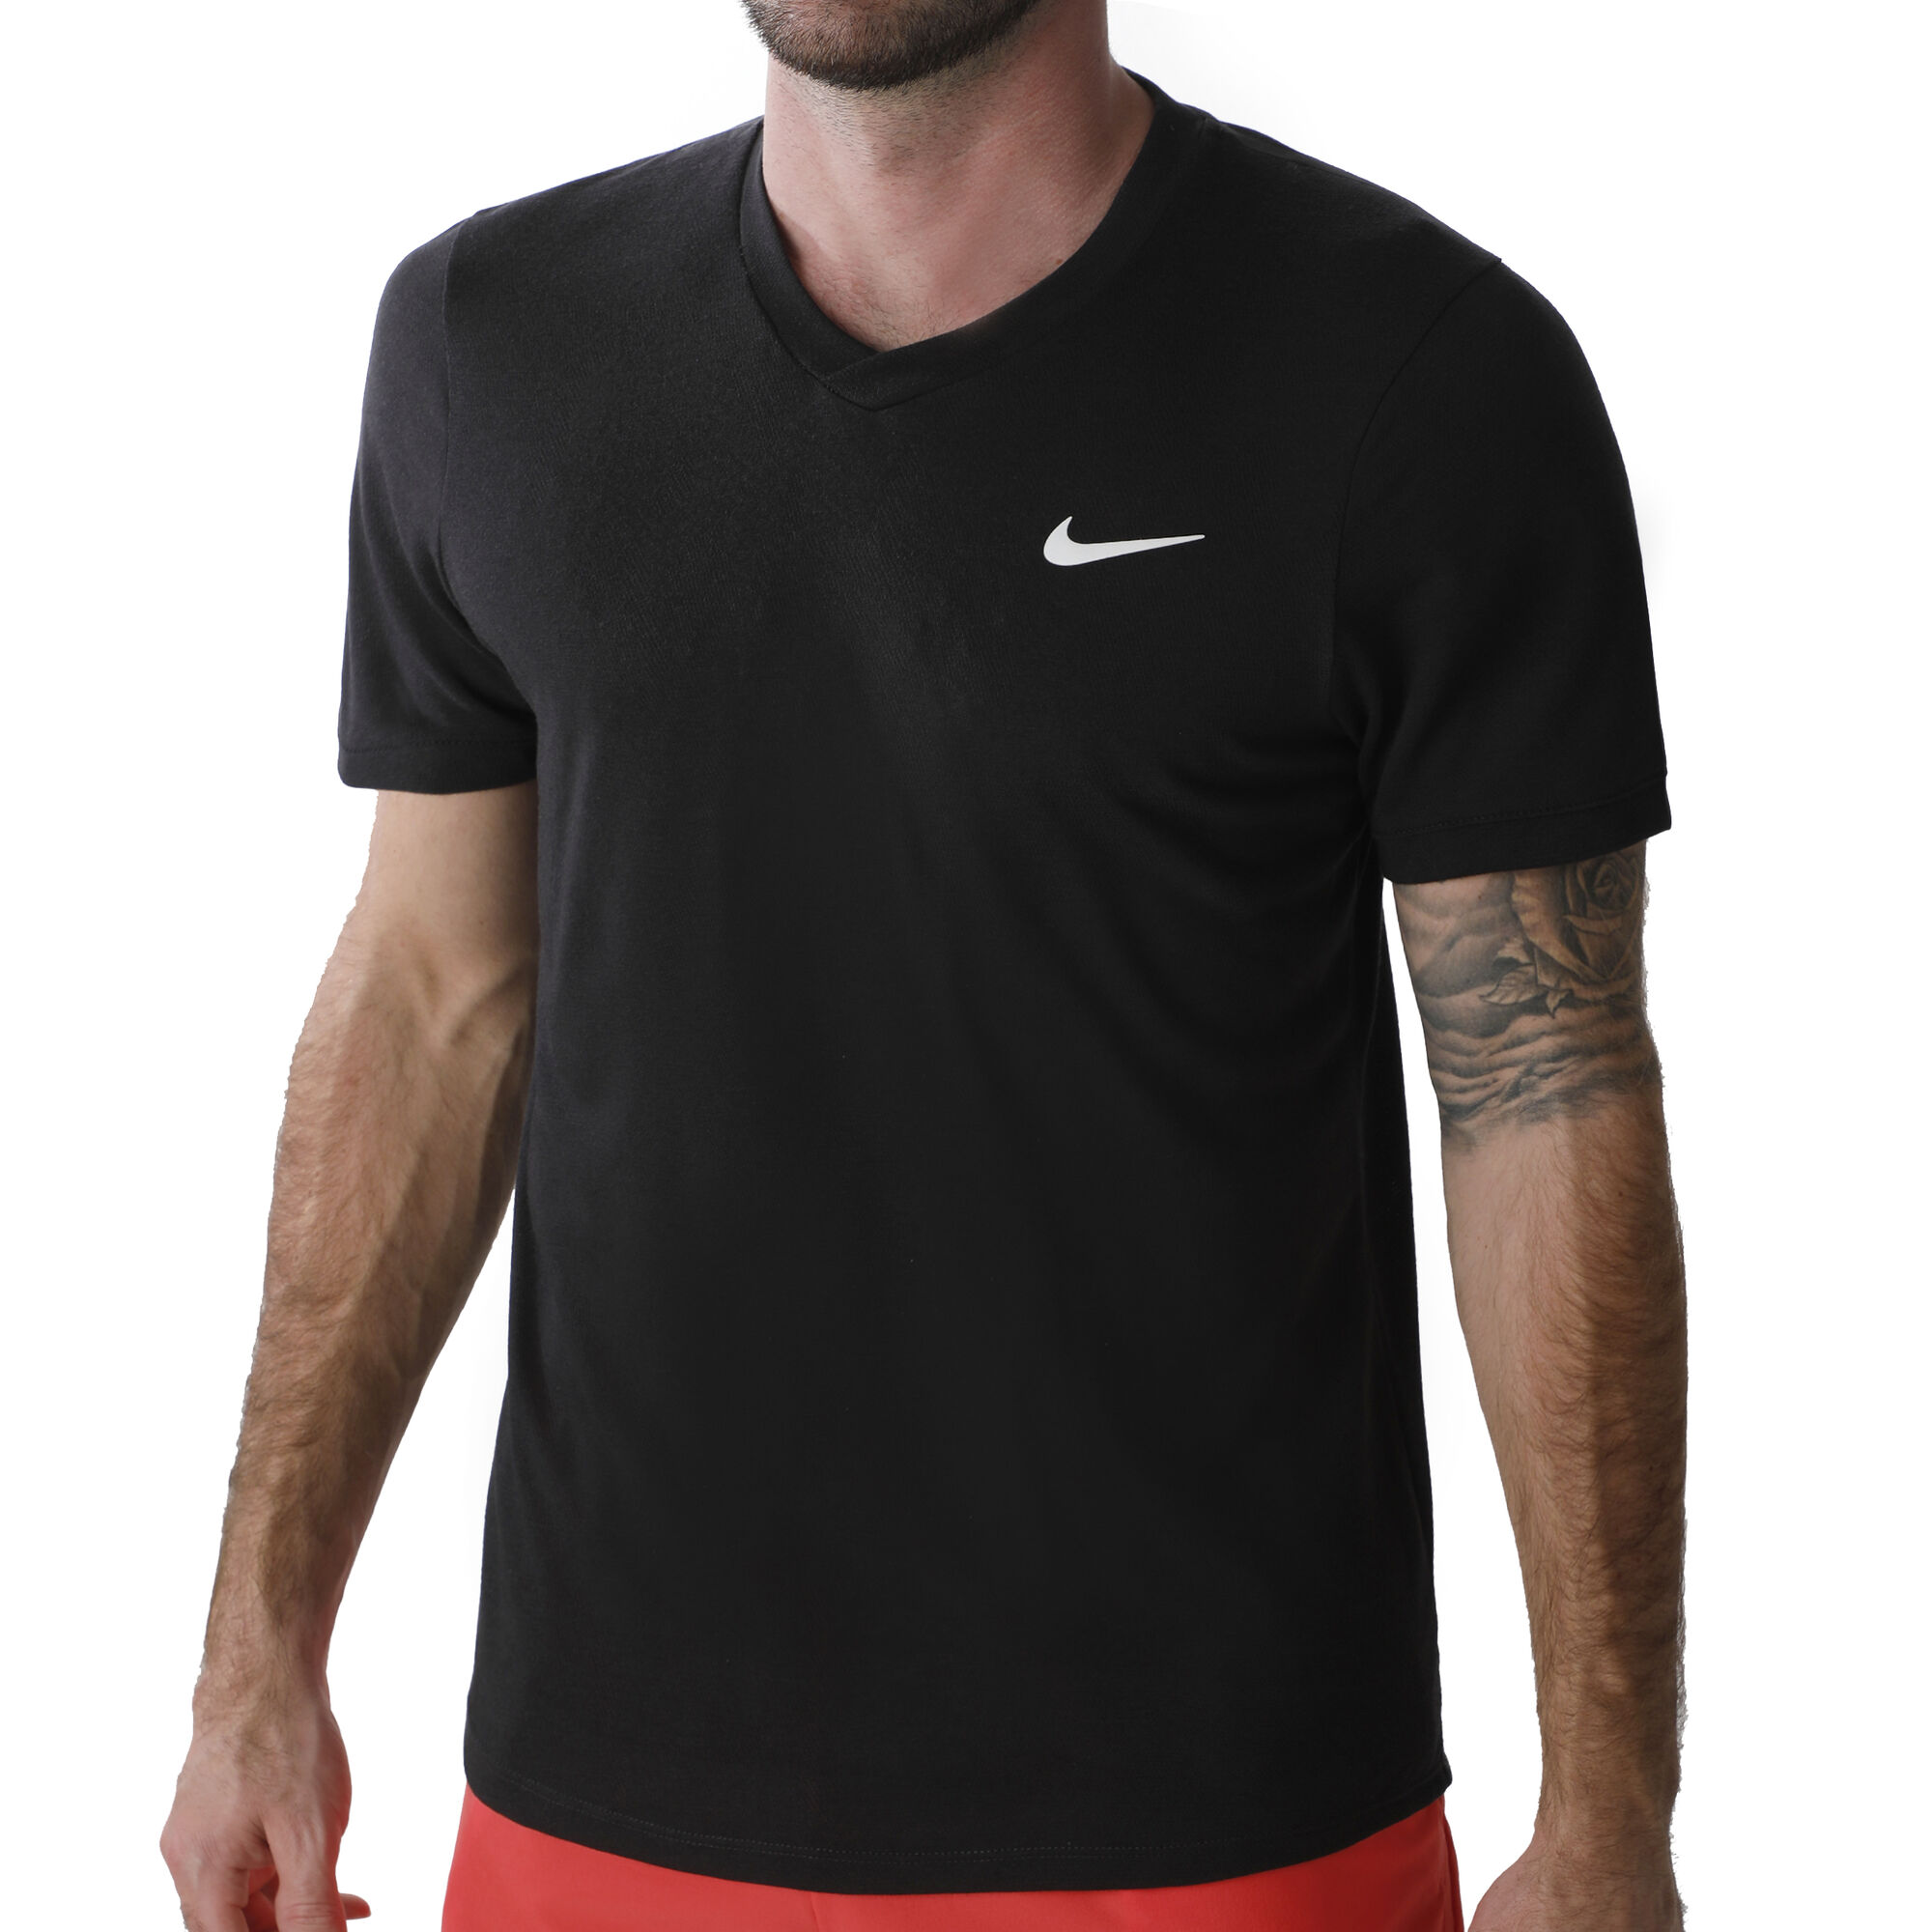 buy Nike Court Dry Challenger T-Shirt Men - Black, White online ...